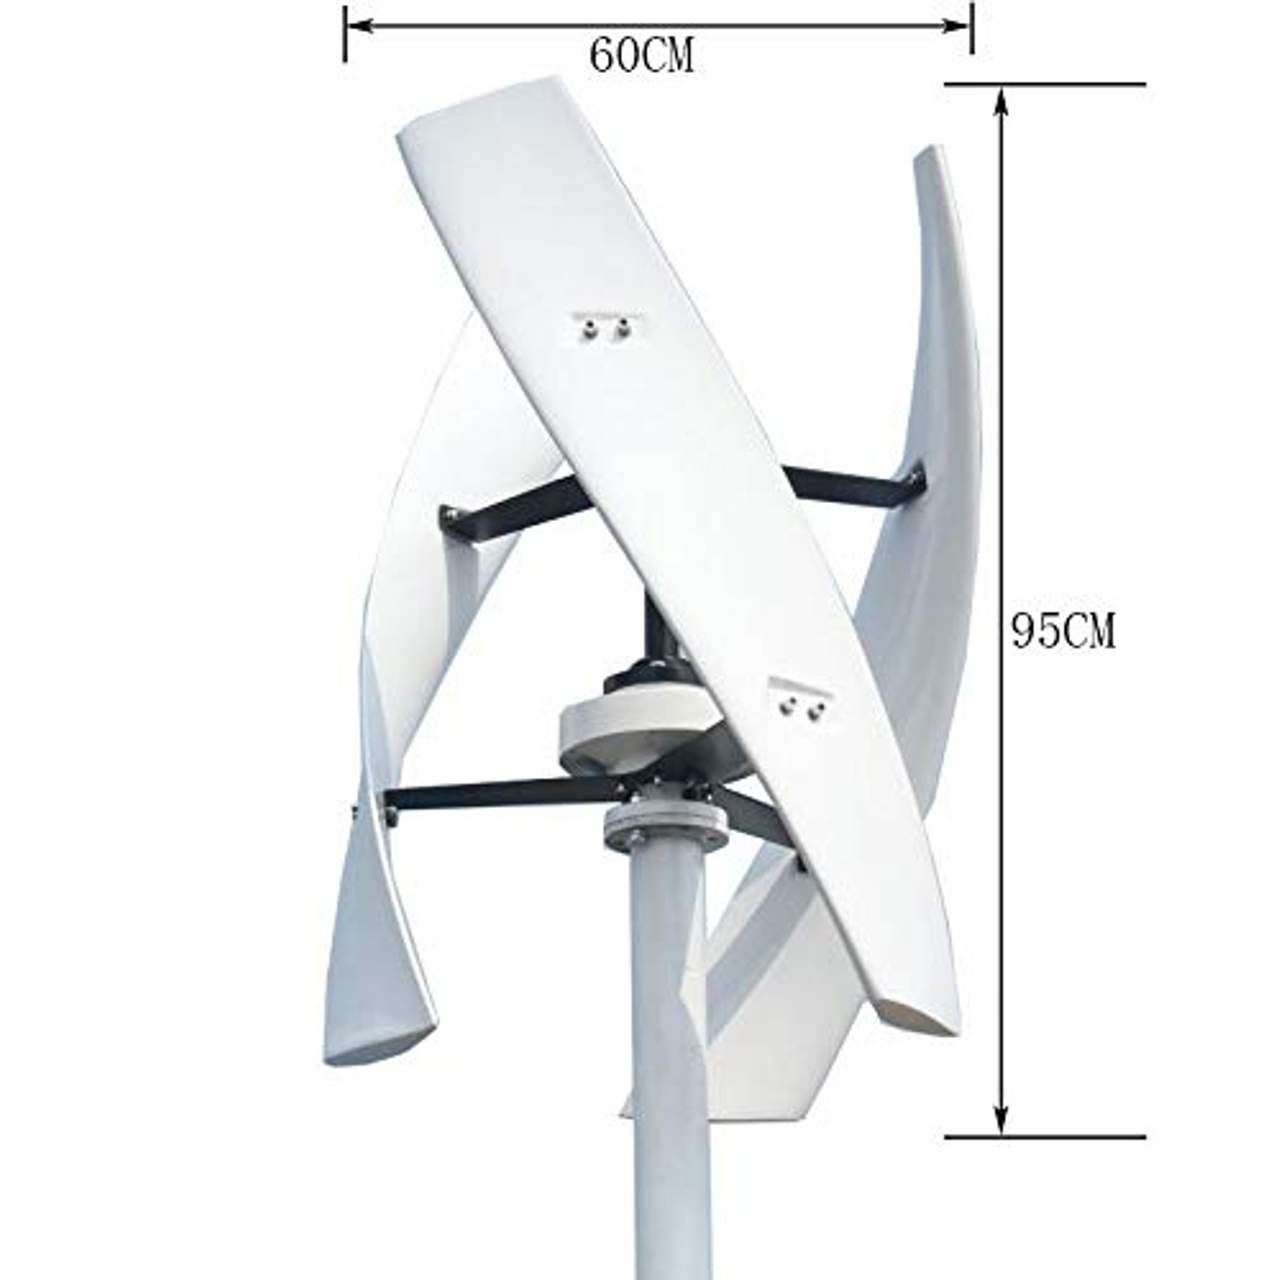 FLTXNY POWER 600W 48V Vertikale Windkraftanlage Windgenerator Heimgebrauch